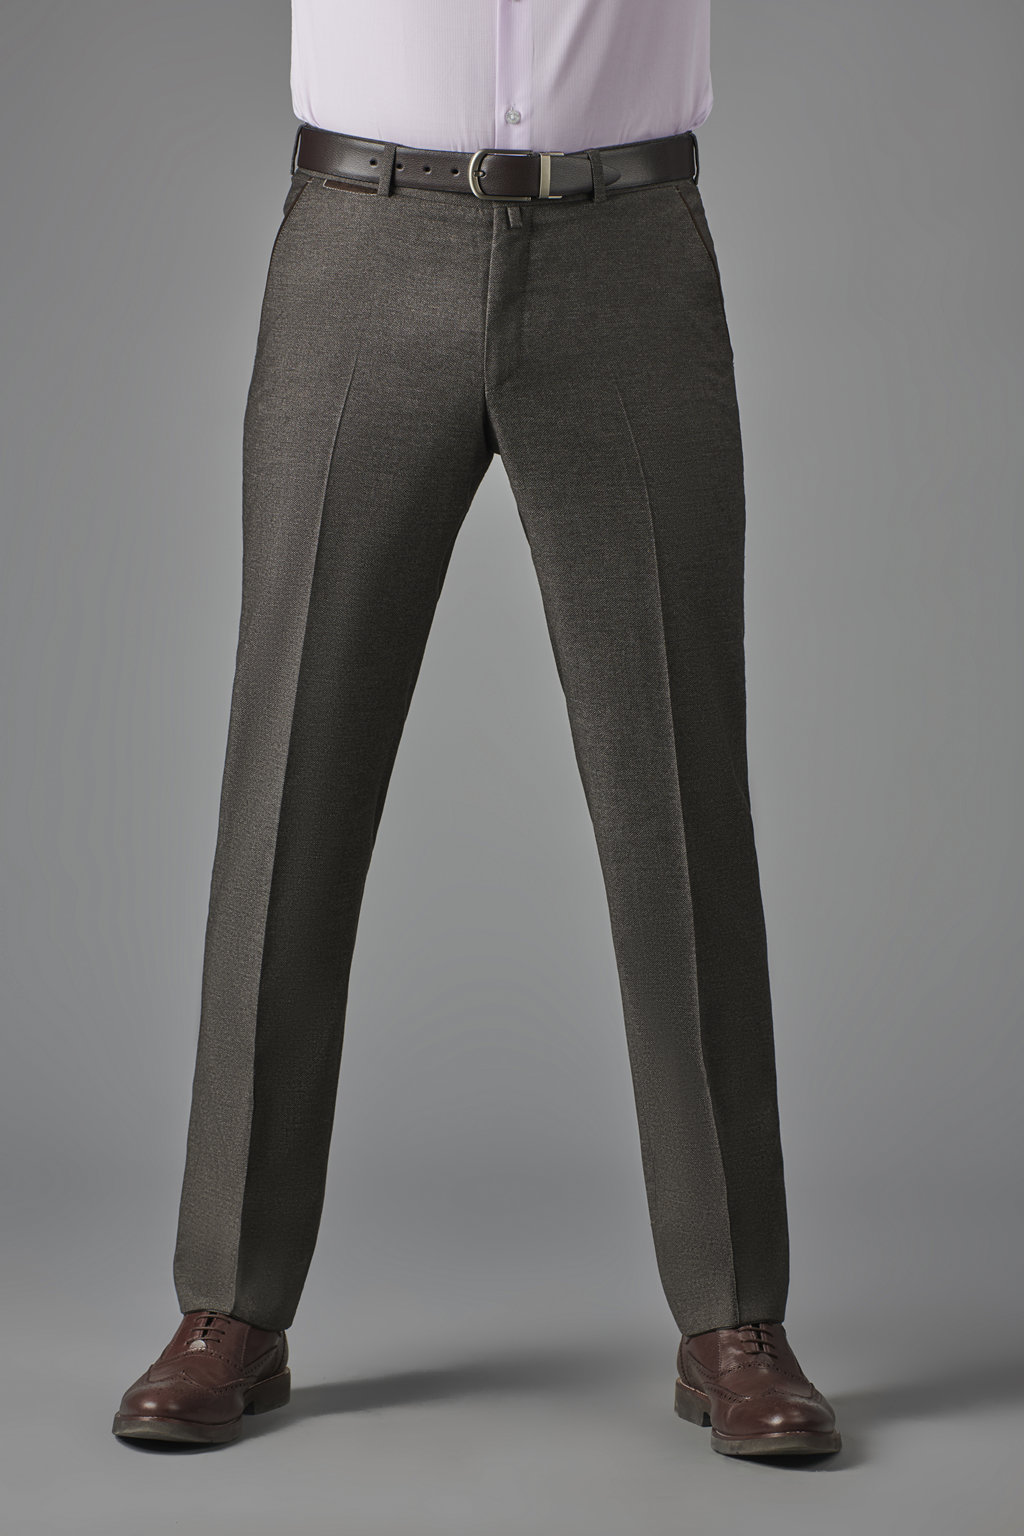 Коричневые брюки из итальянской шерстяной ткани Zignone Slim Fit